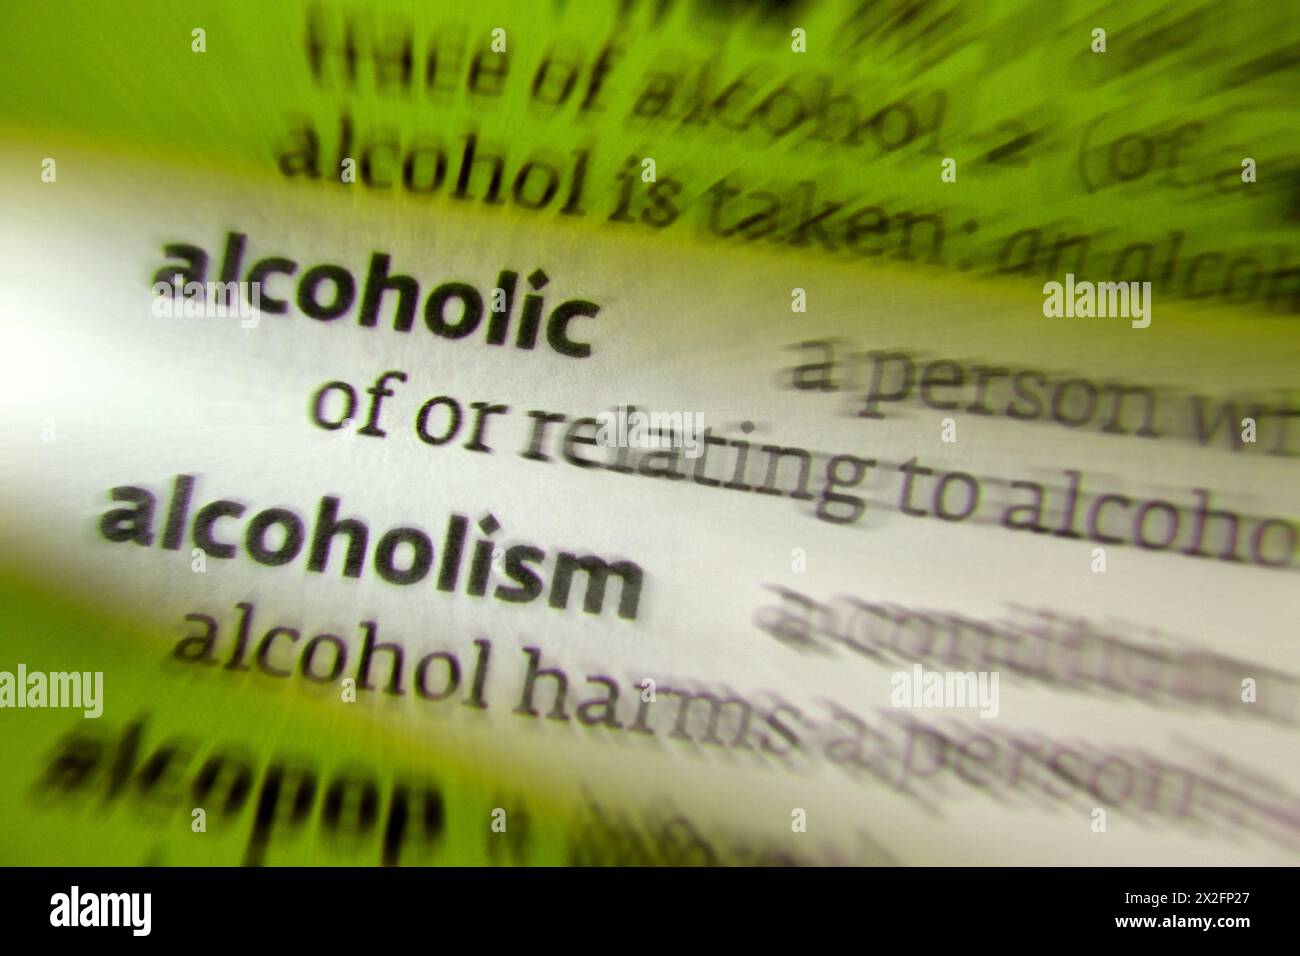 Alkoholismus - Alkoholabhängigkeit - Symptome: Große Mengen Alkohol über einen langen Zeitraum trinken, Schwierigkeiten beim Abbau, Erwerb und Trinken von Alco Stockfoto